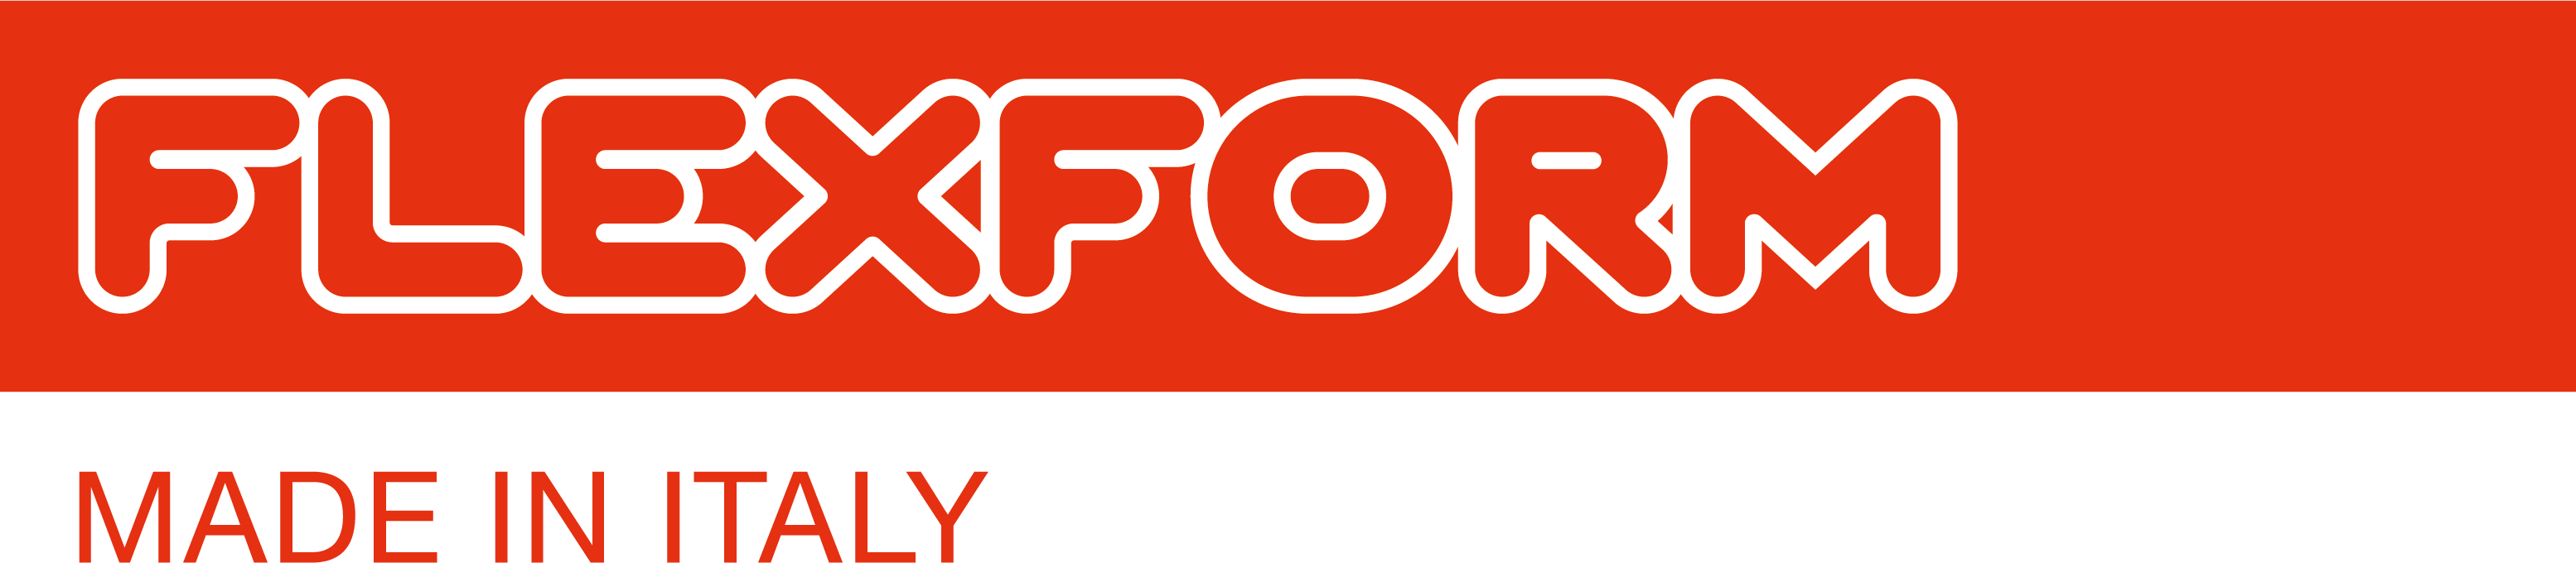 FLEXFORM logo 2